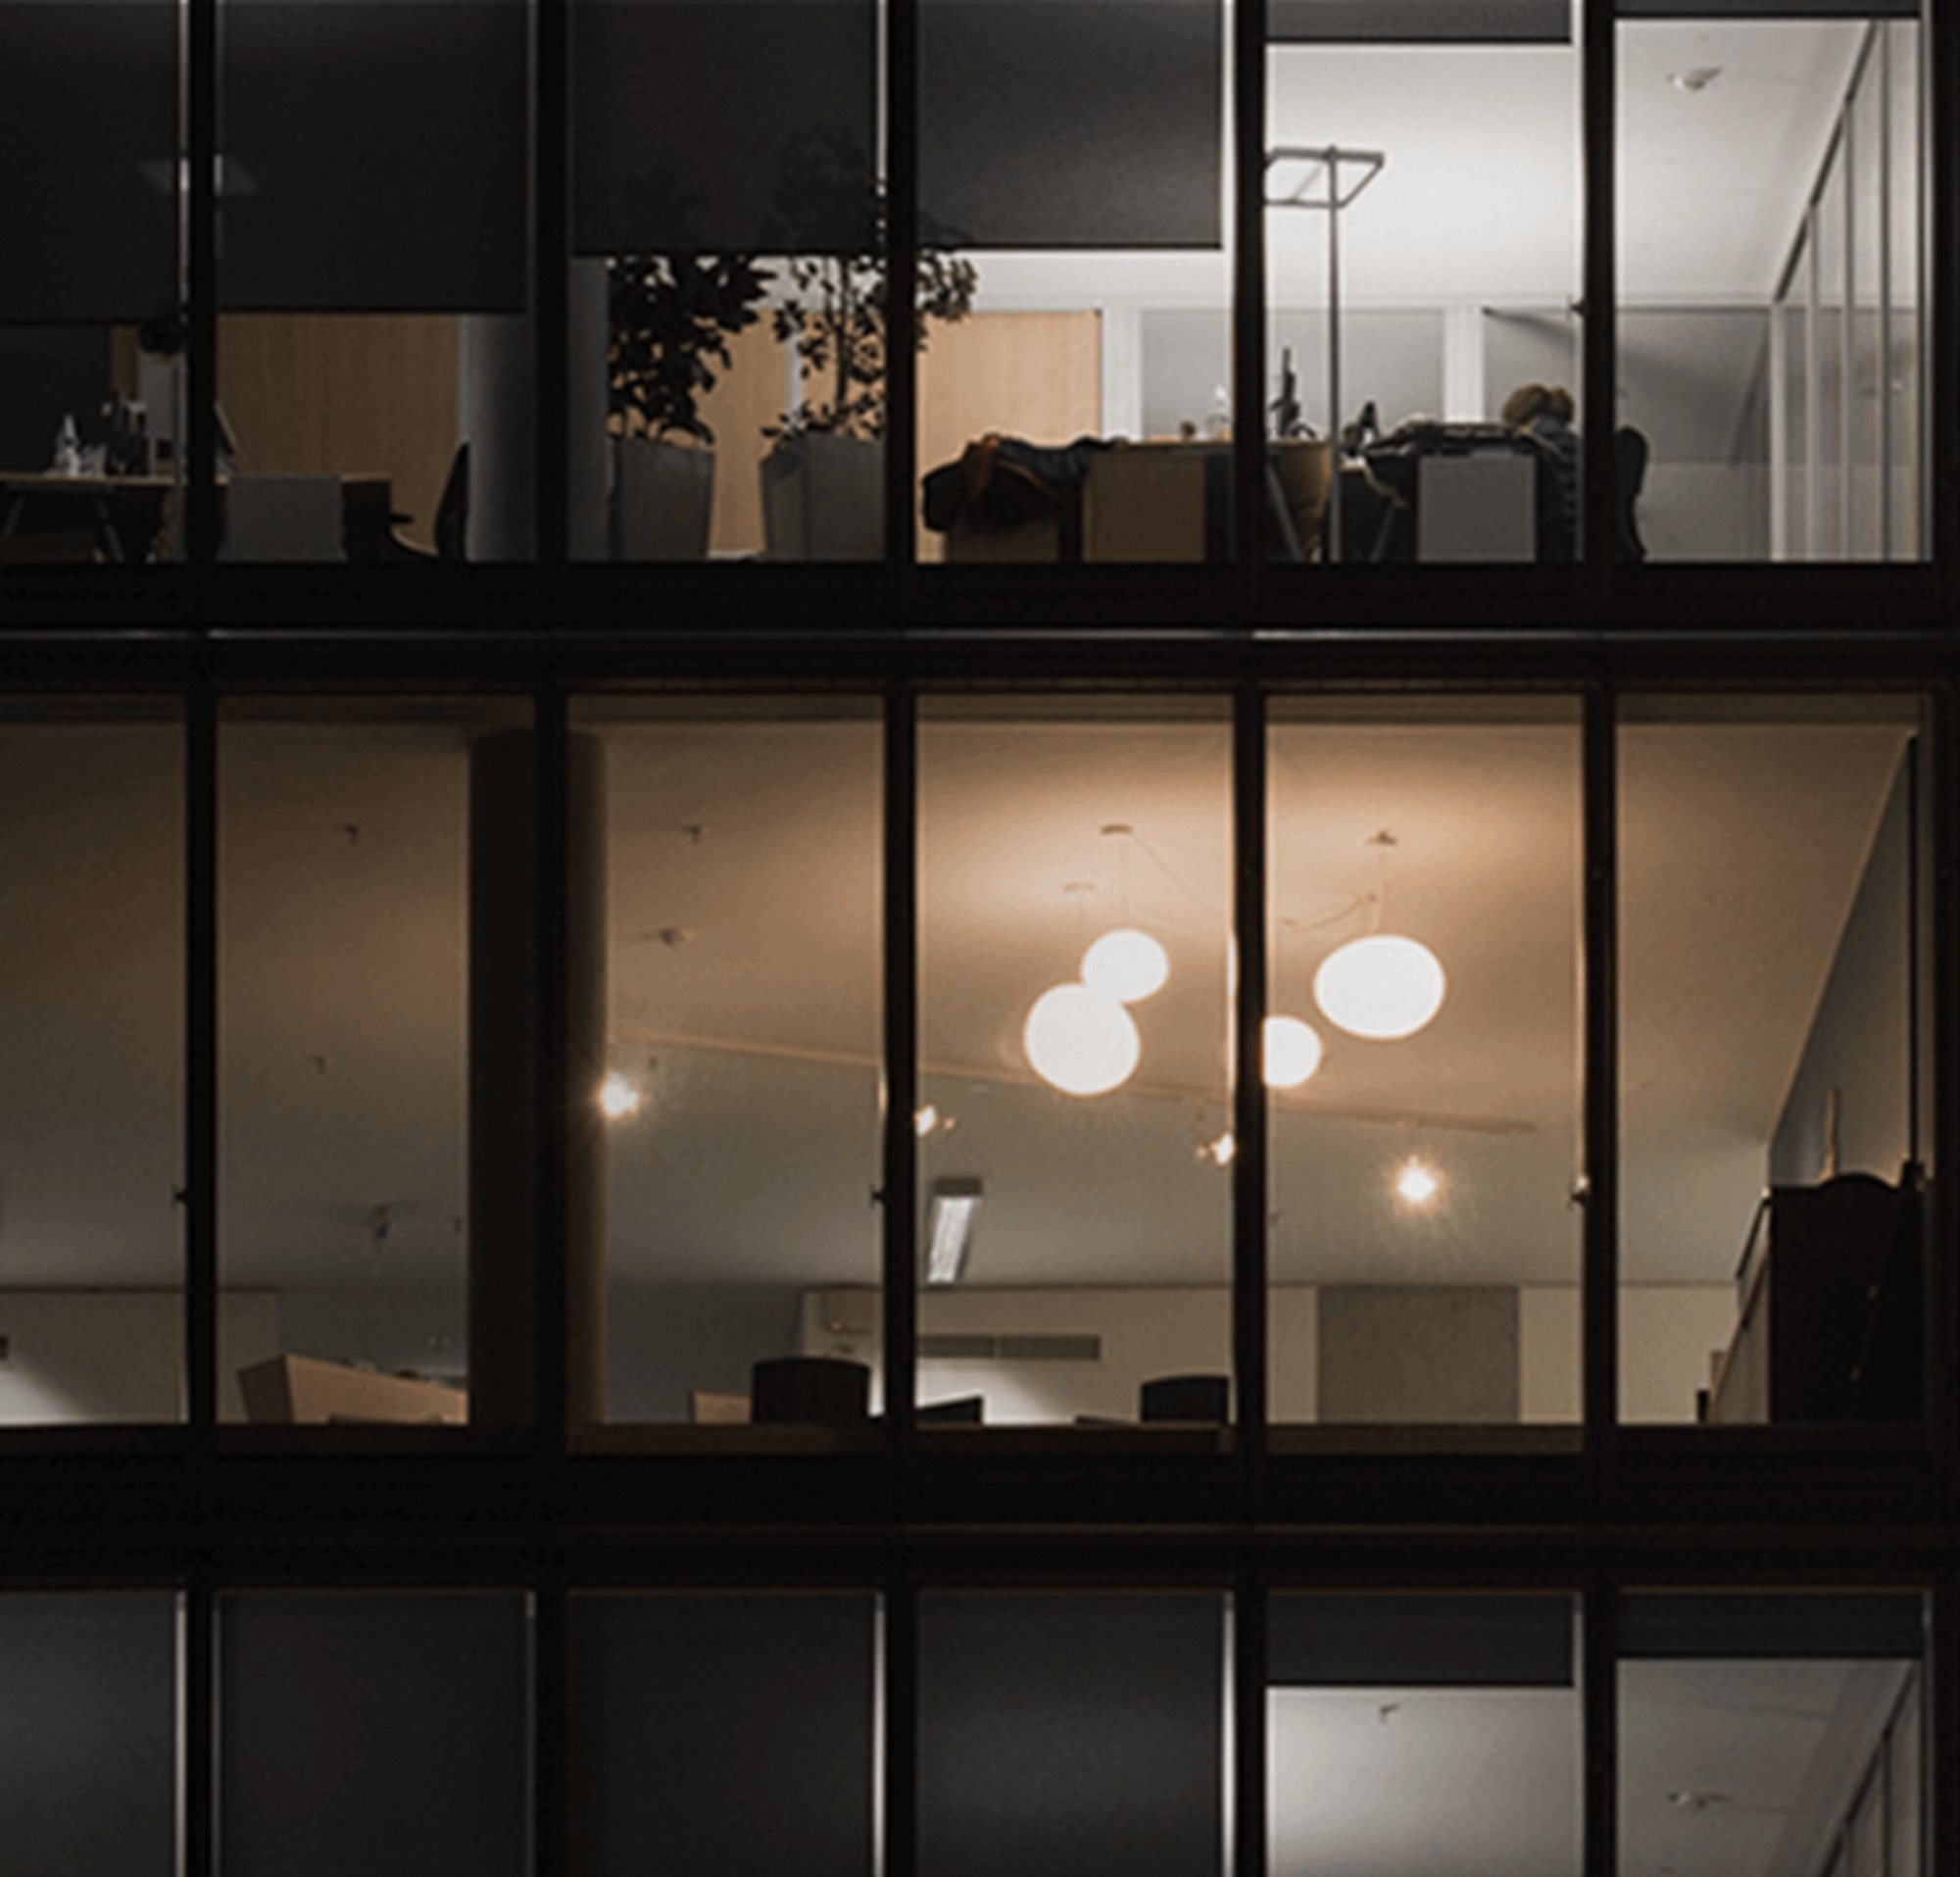 Una imagen de tres pisos en su mayoría oscuros en un edificio de oficinas de varios pisos por la noche.